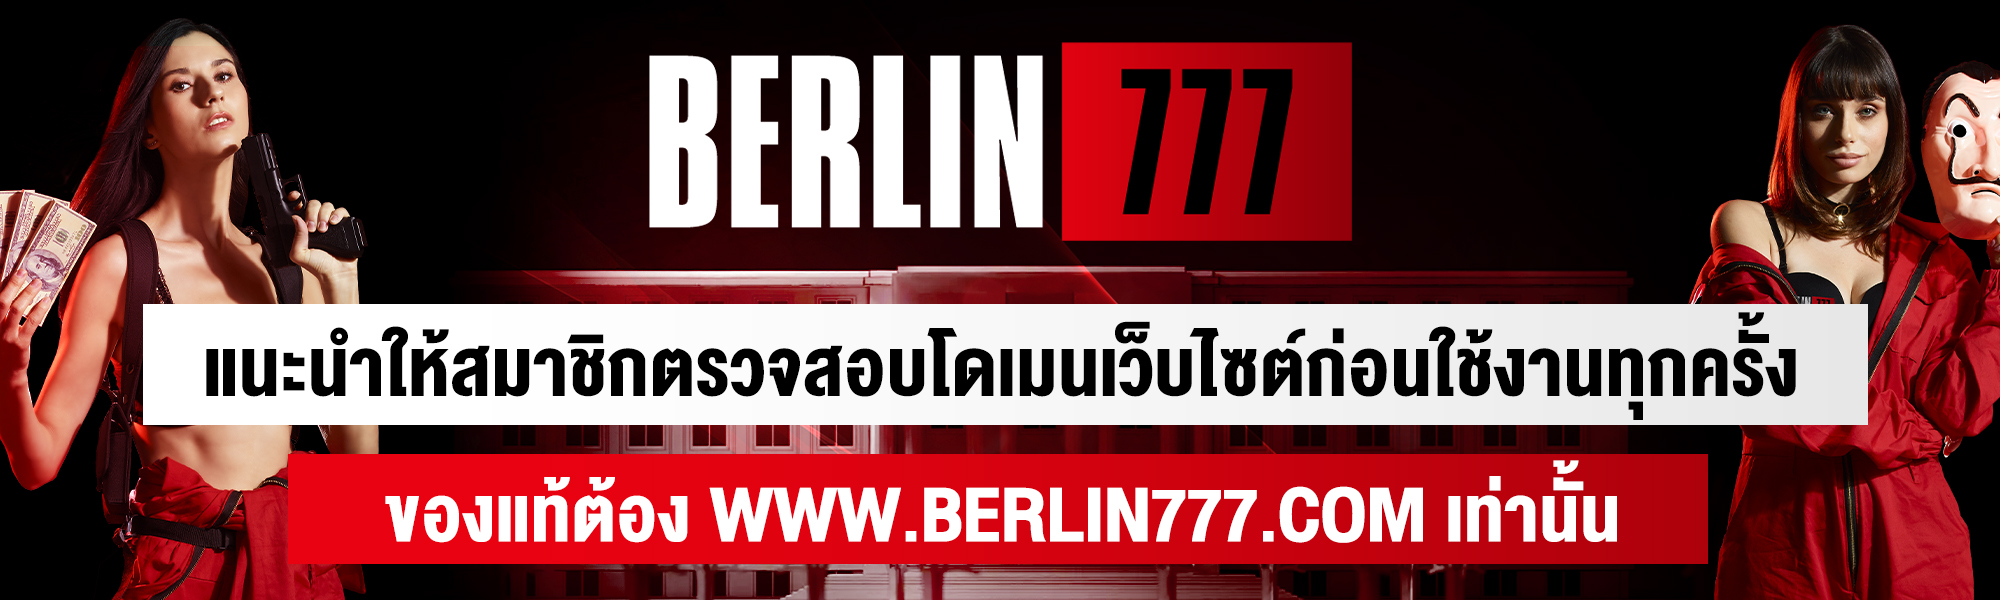 Berlin777 พิกัดตู้เซฟ คาสิโนแห่งใหม่ พร้อมปล้นชนทุกค่าย ปล้นง่าย จ่ายไว ไว้ใจ Berlin777